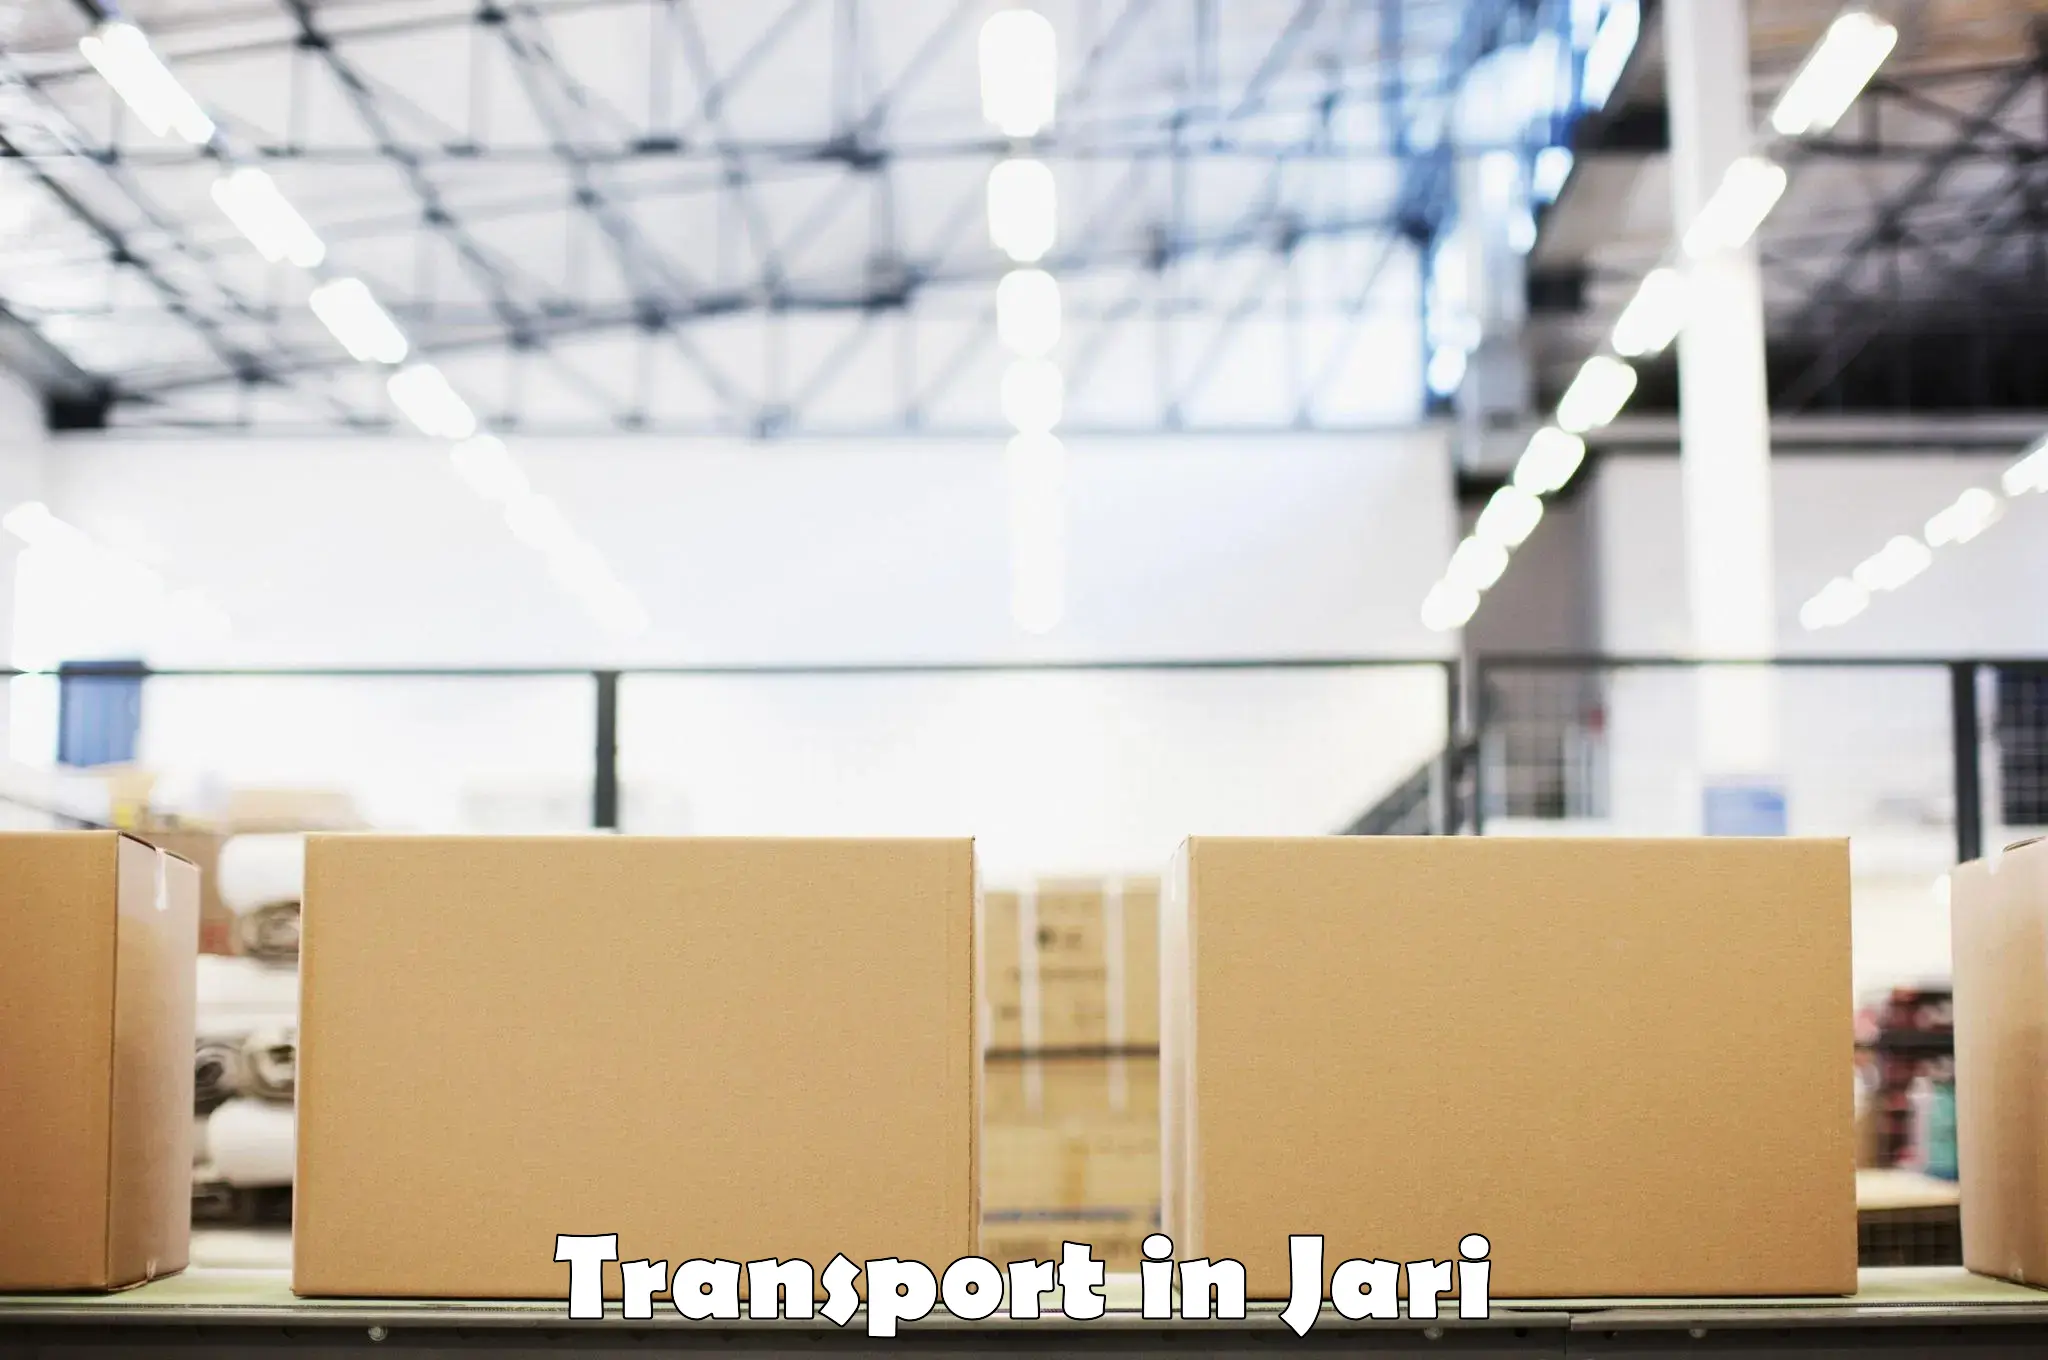 Transport services in Jari